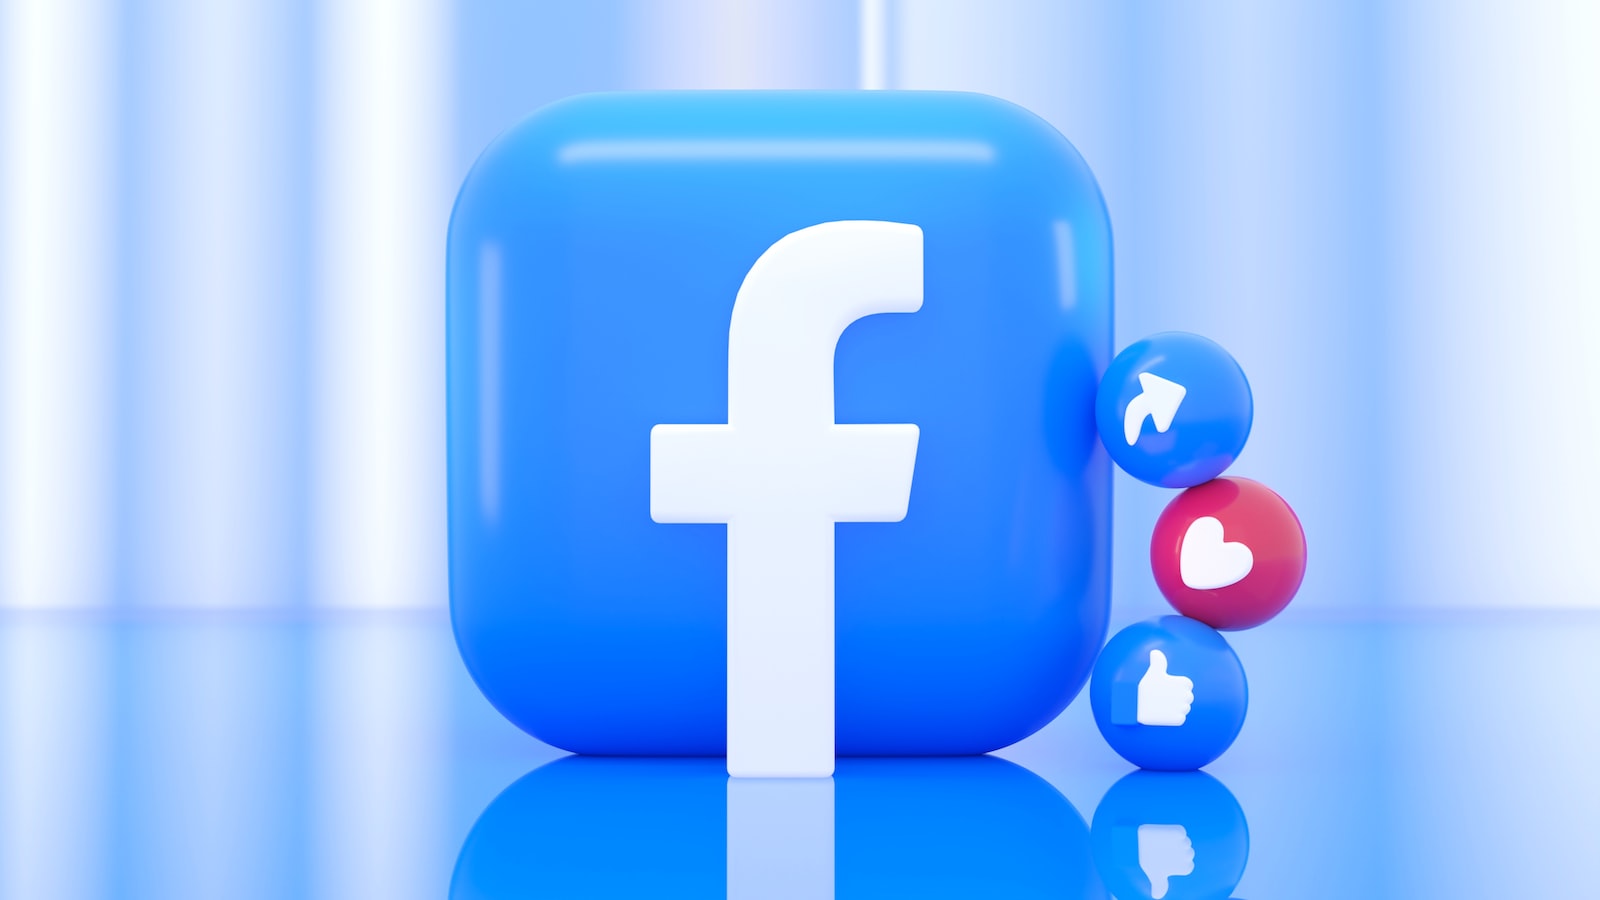 FacebookBM购买 | 开拓创意营销的全新广告渠道: